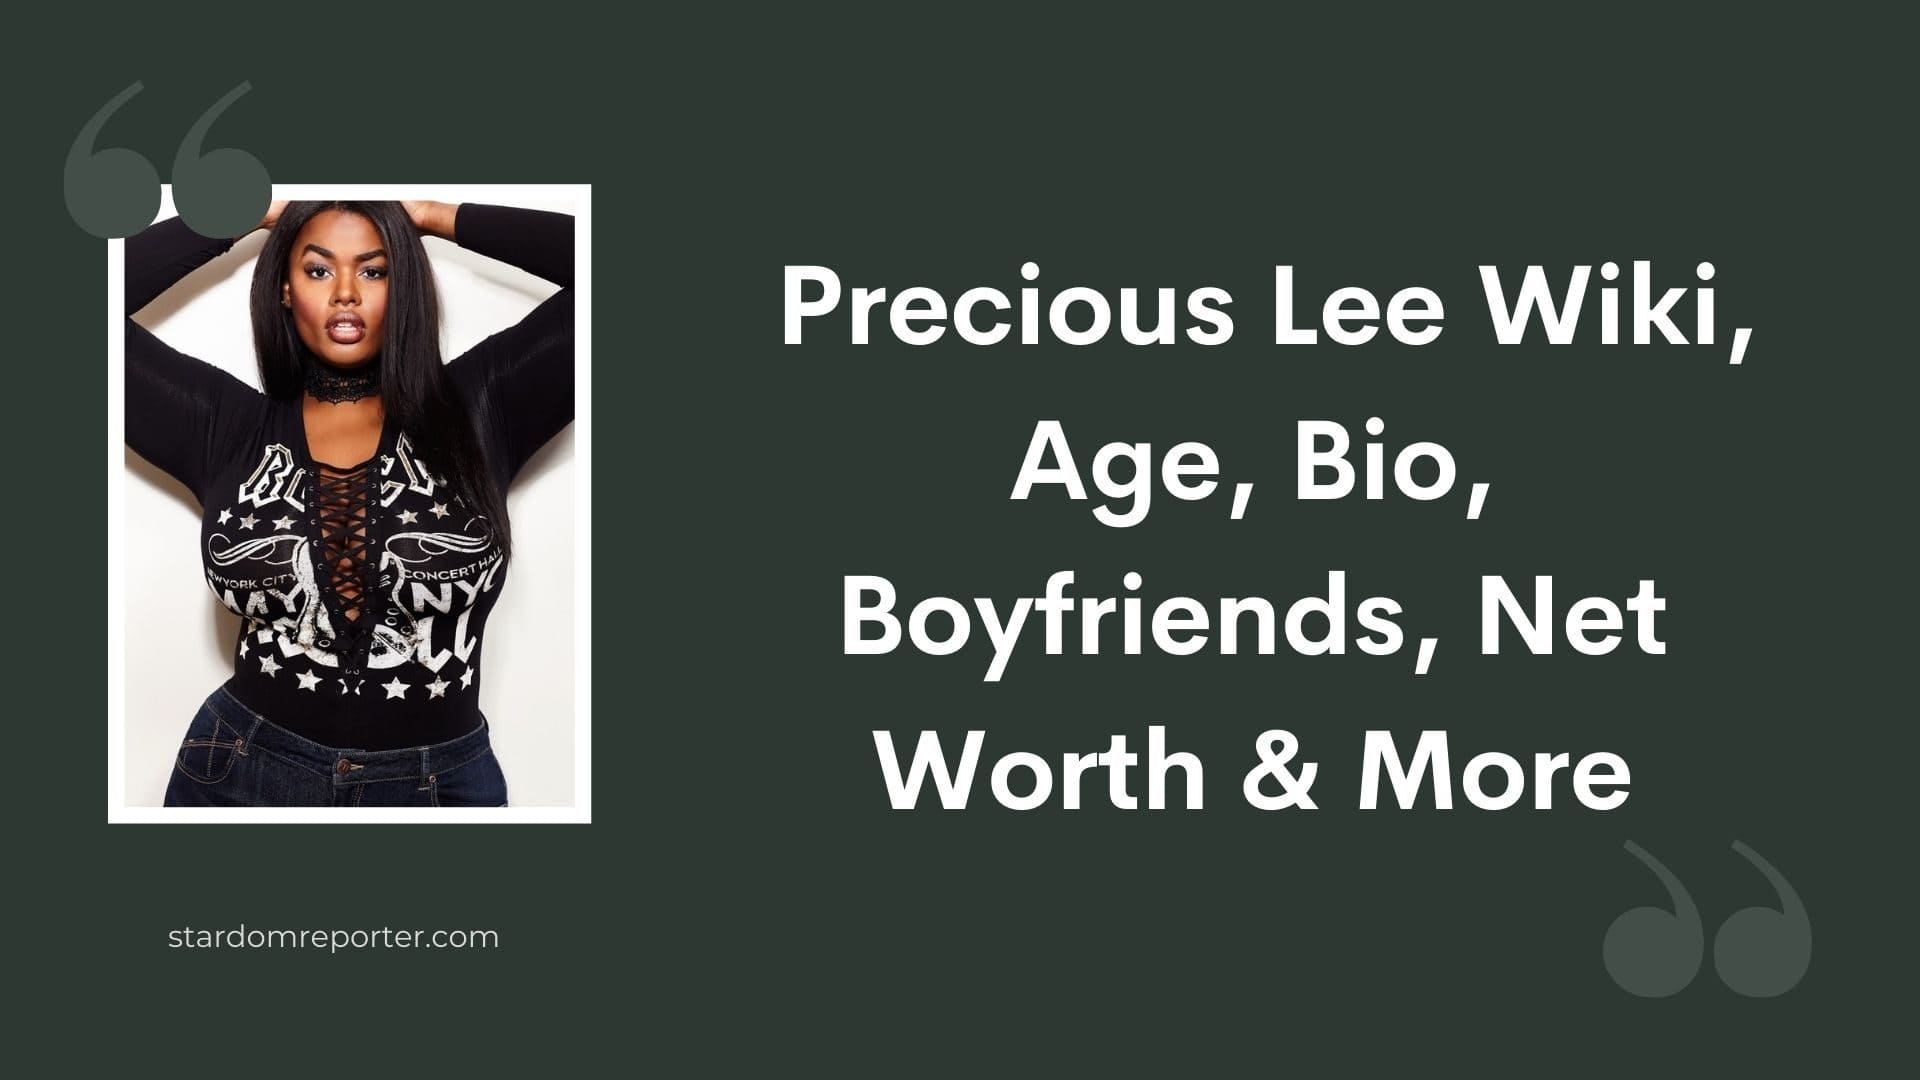 Precious Lee Wiki, Age, Bio, Boyfriends, Net Worth & More - 11